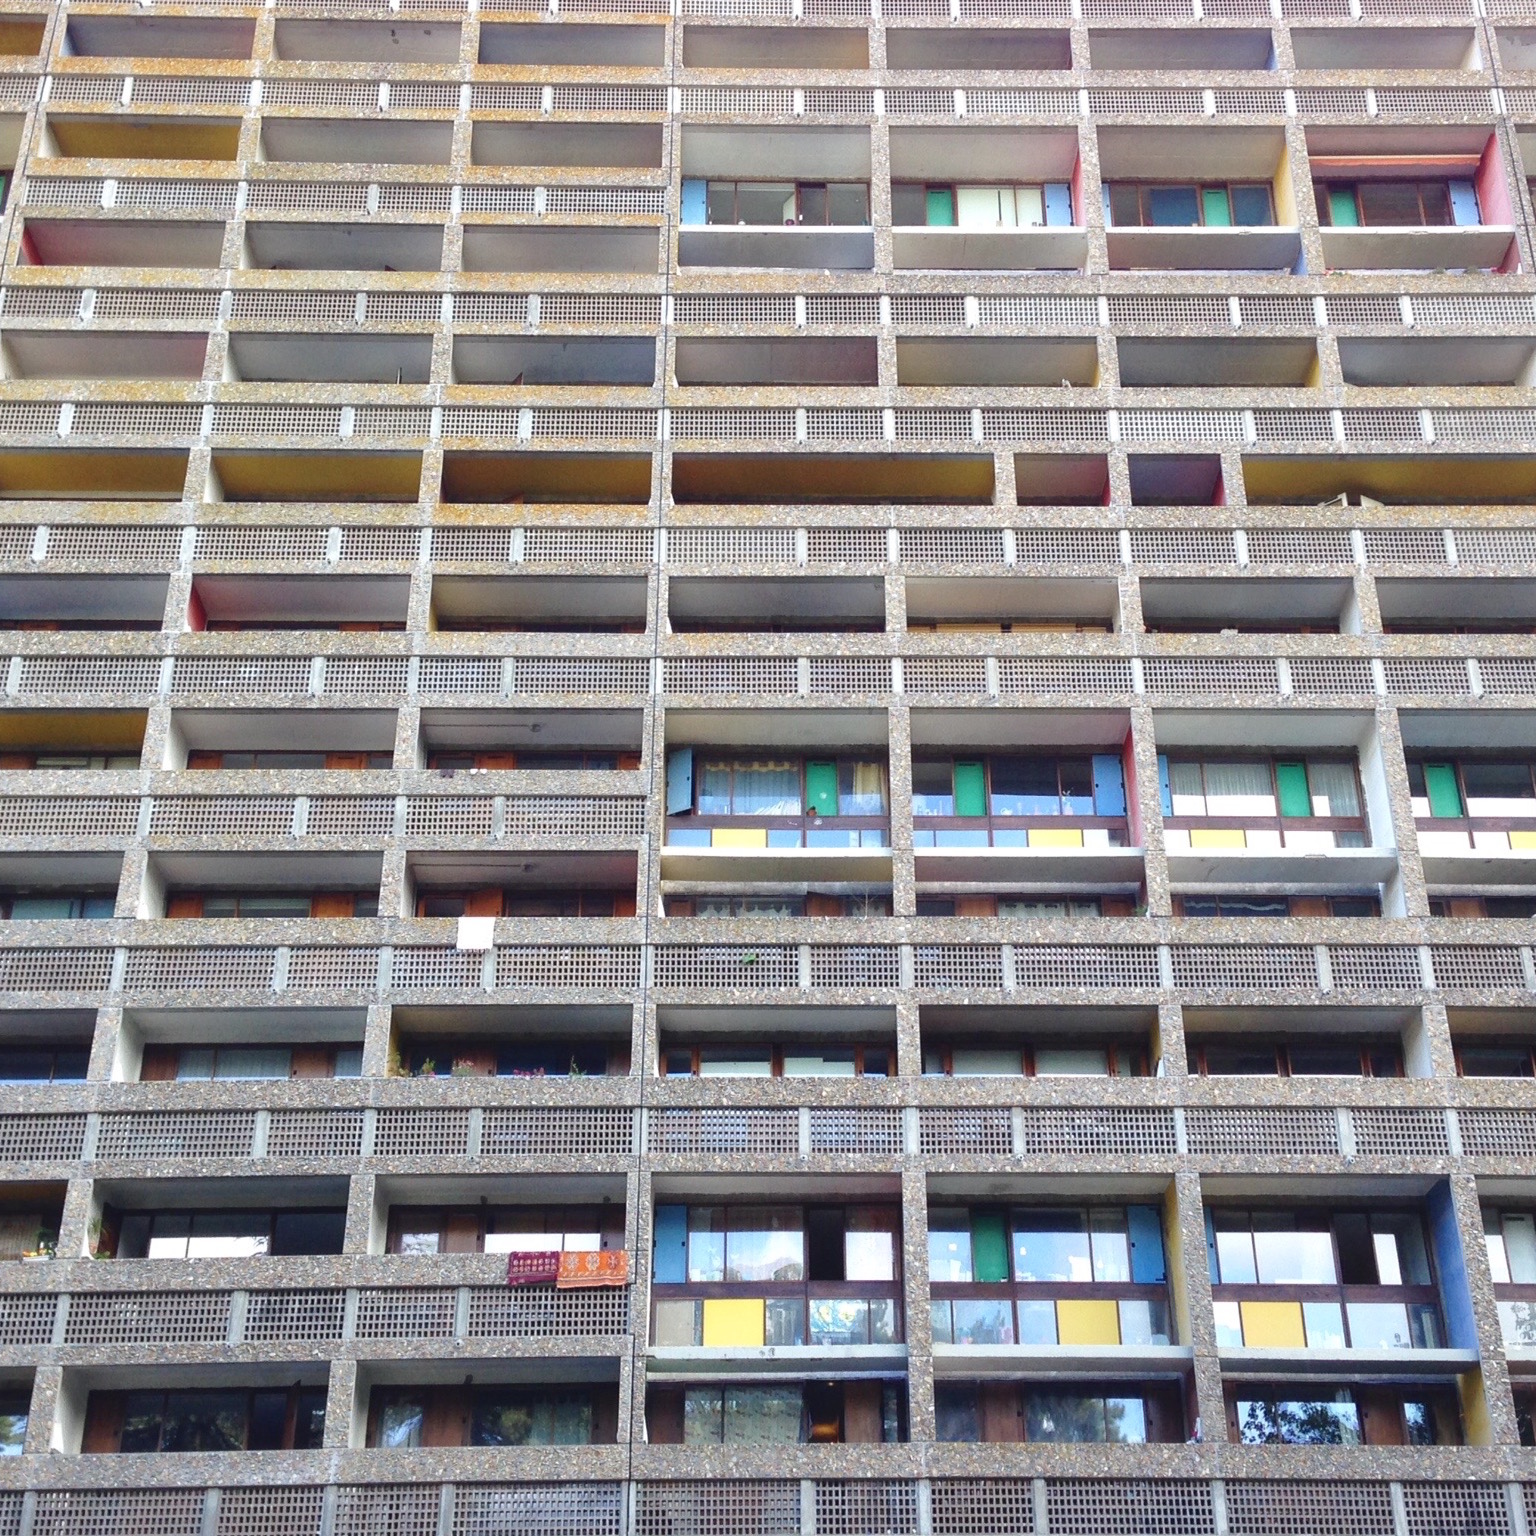 Une des façades colorées de l’immeuble.